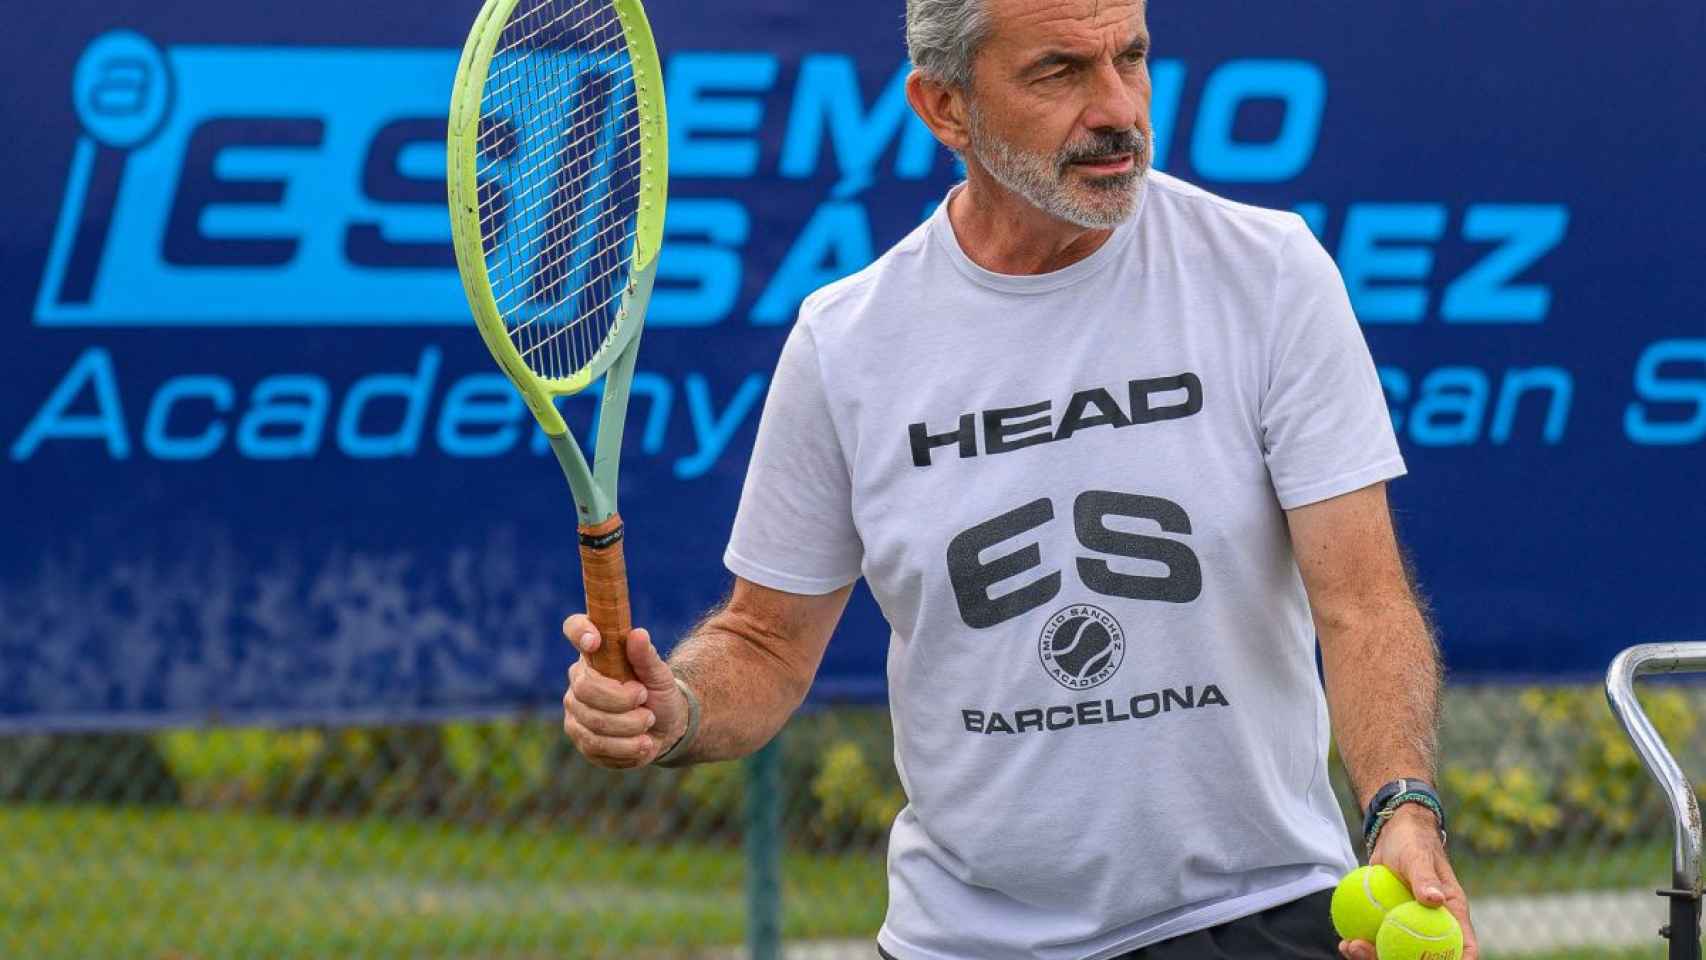 El jugador Emilio Sánchez, que actualmente gestiona una red de escuelas de tenis